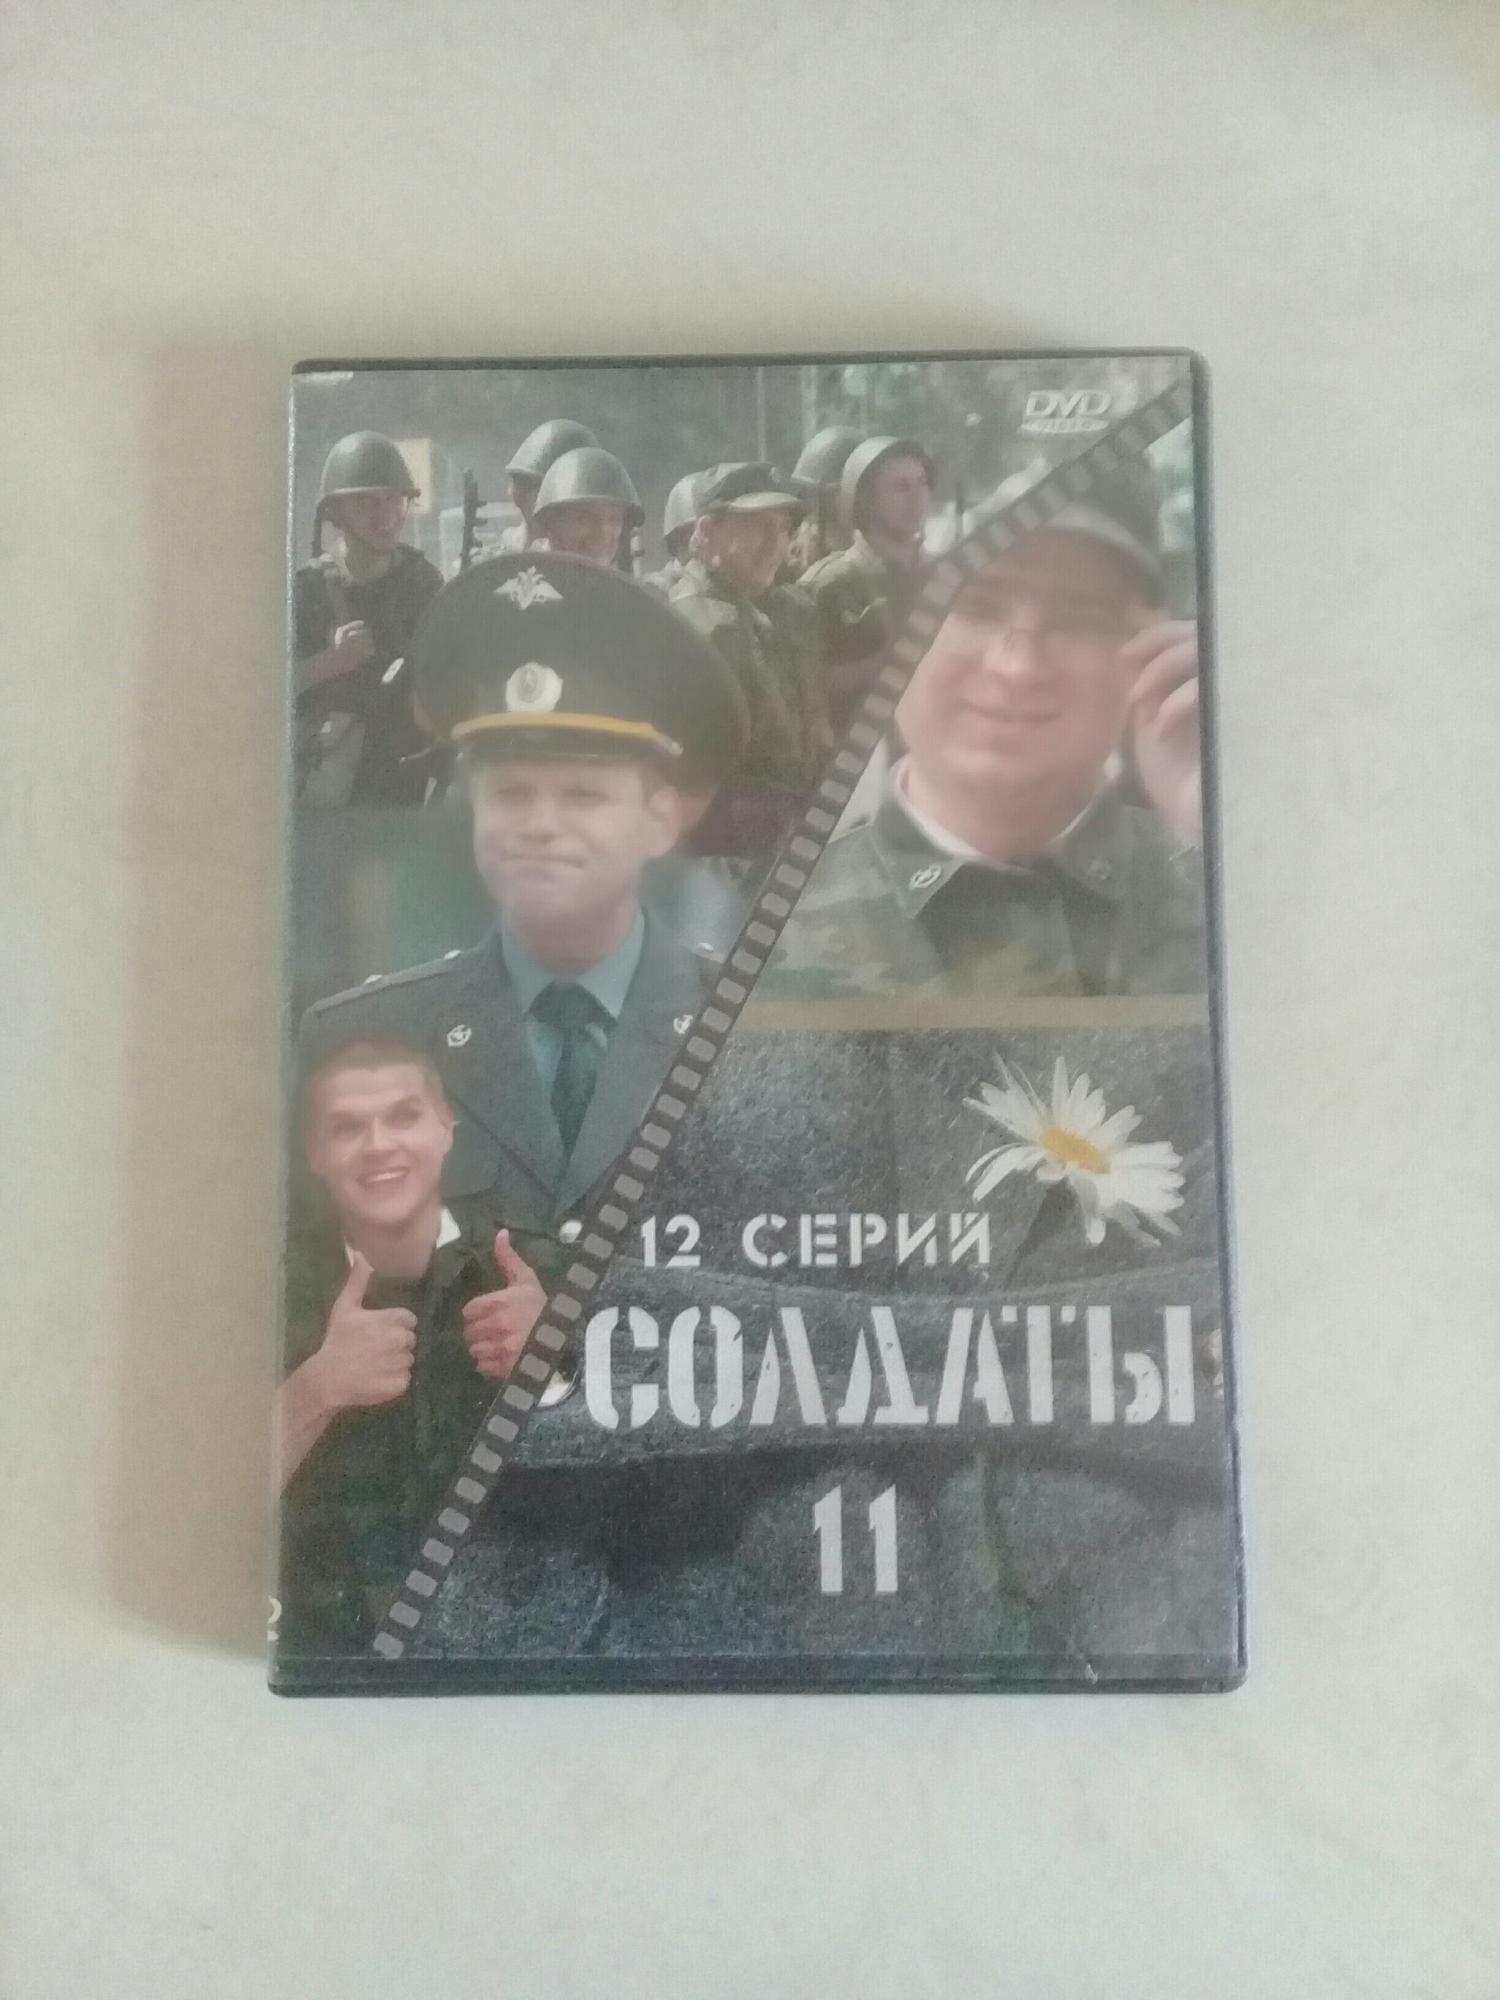 Обложки солдаты. Солдаты обложка. DVD солдаты 11. Солдаты 11 диск. Книга в д. к. на обложке солдат.